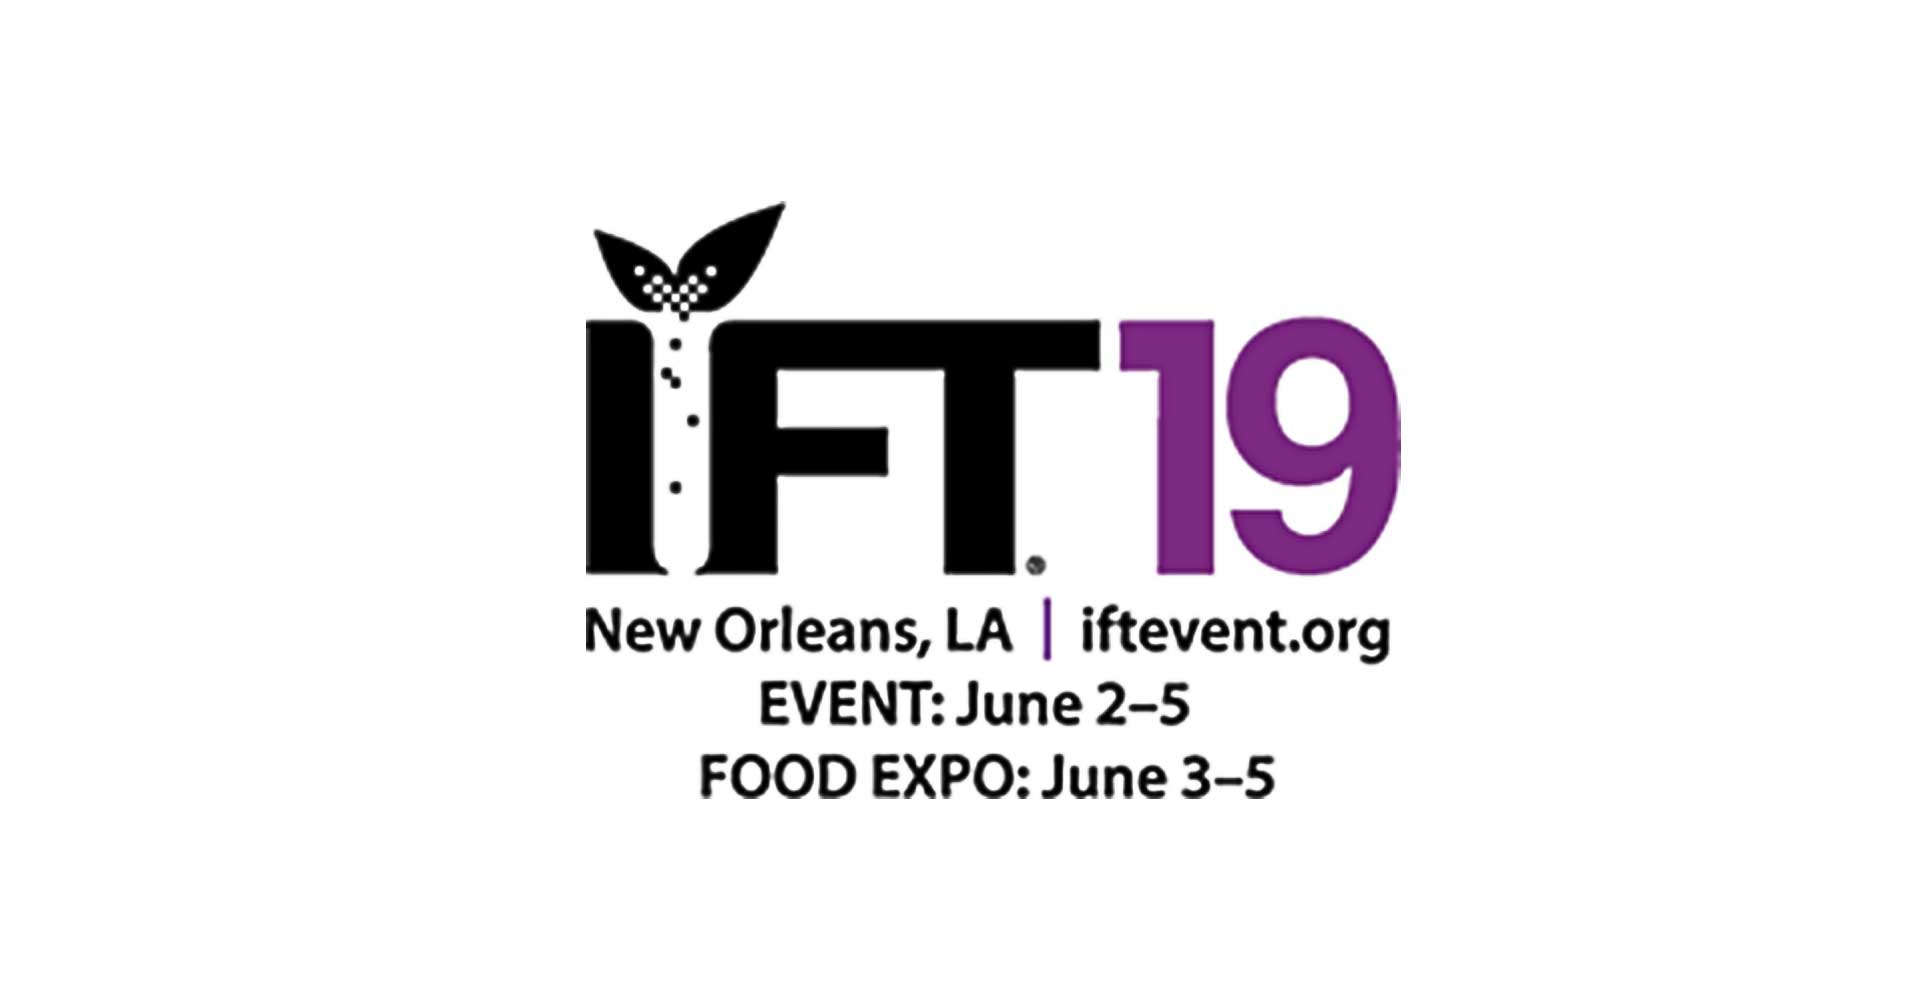 IFT2019 New Orleans, LA. 2019.06.03-05